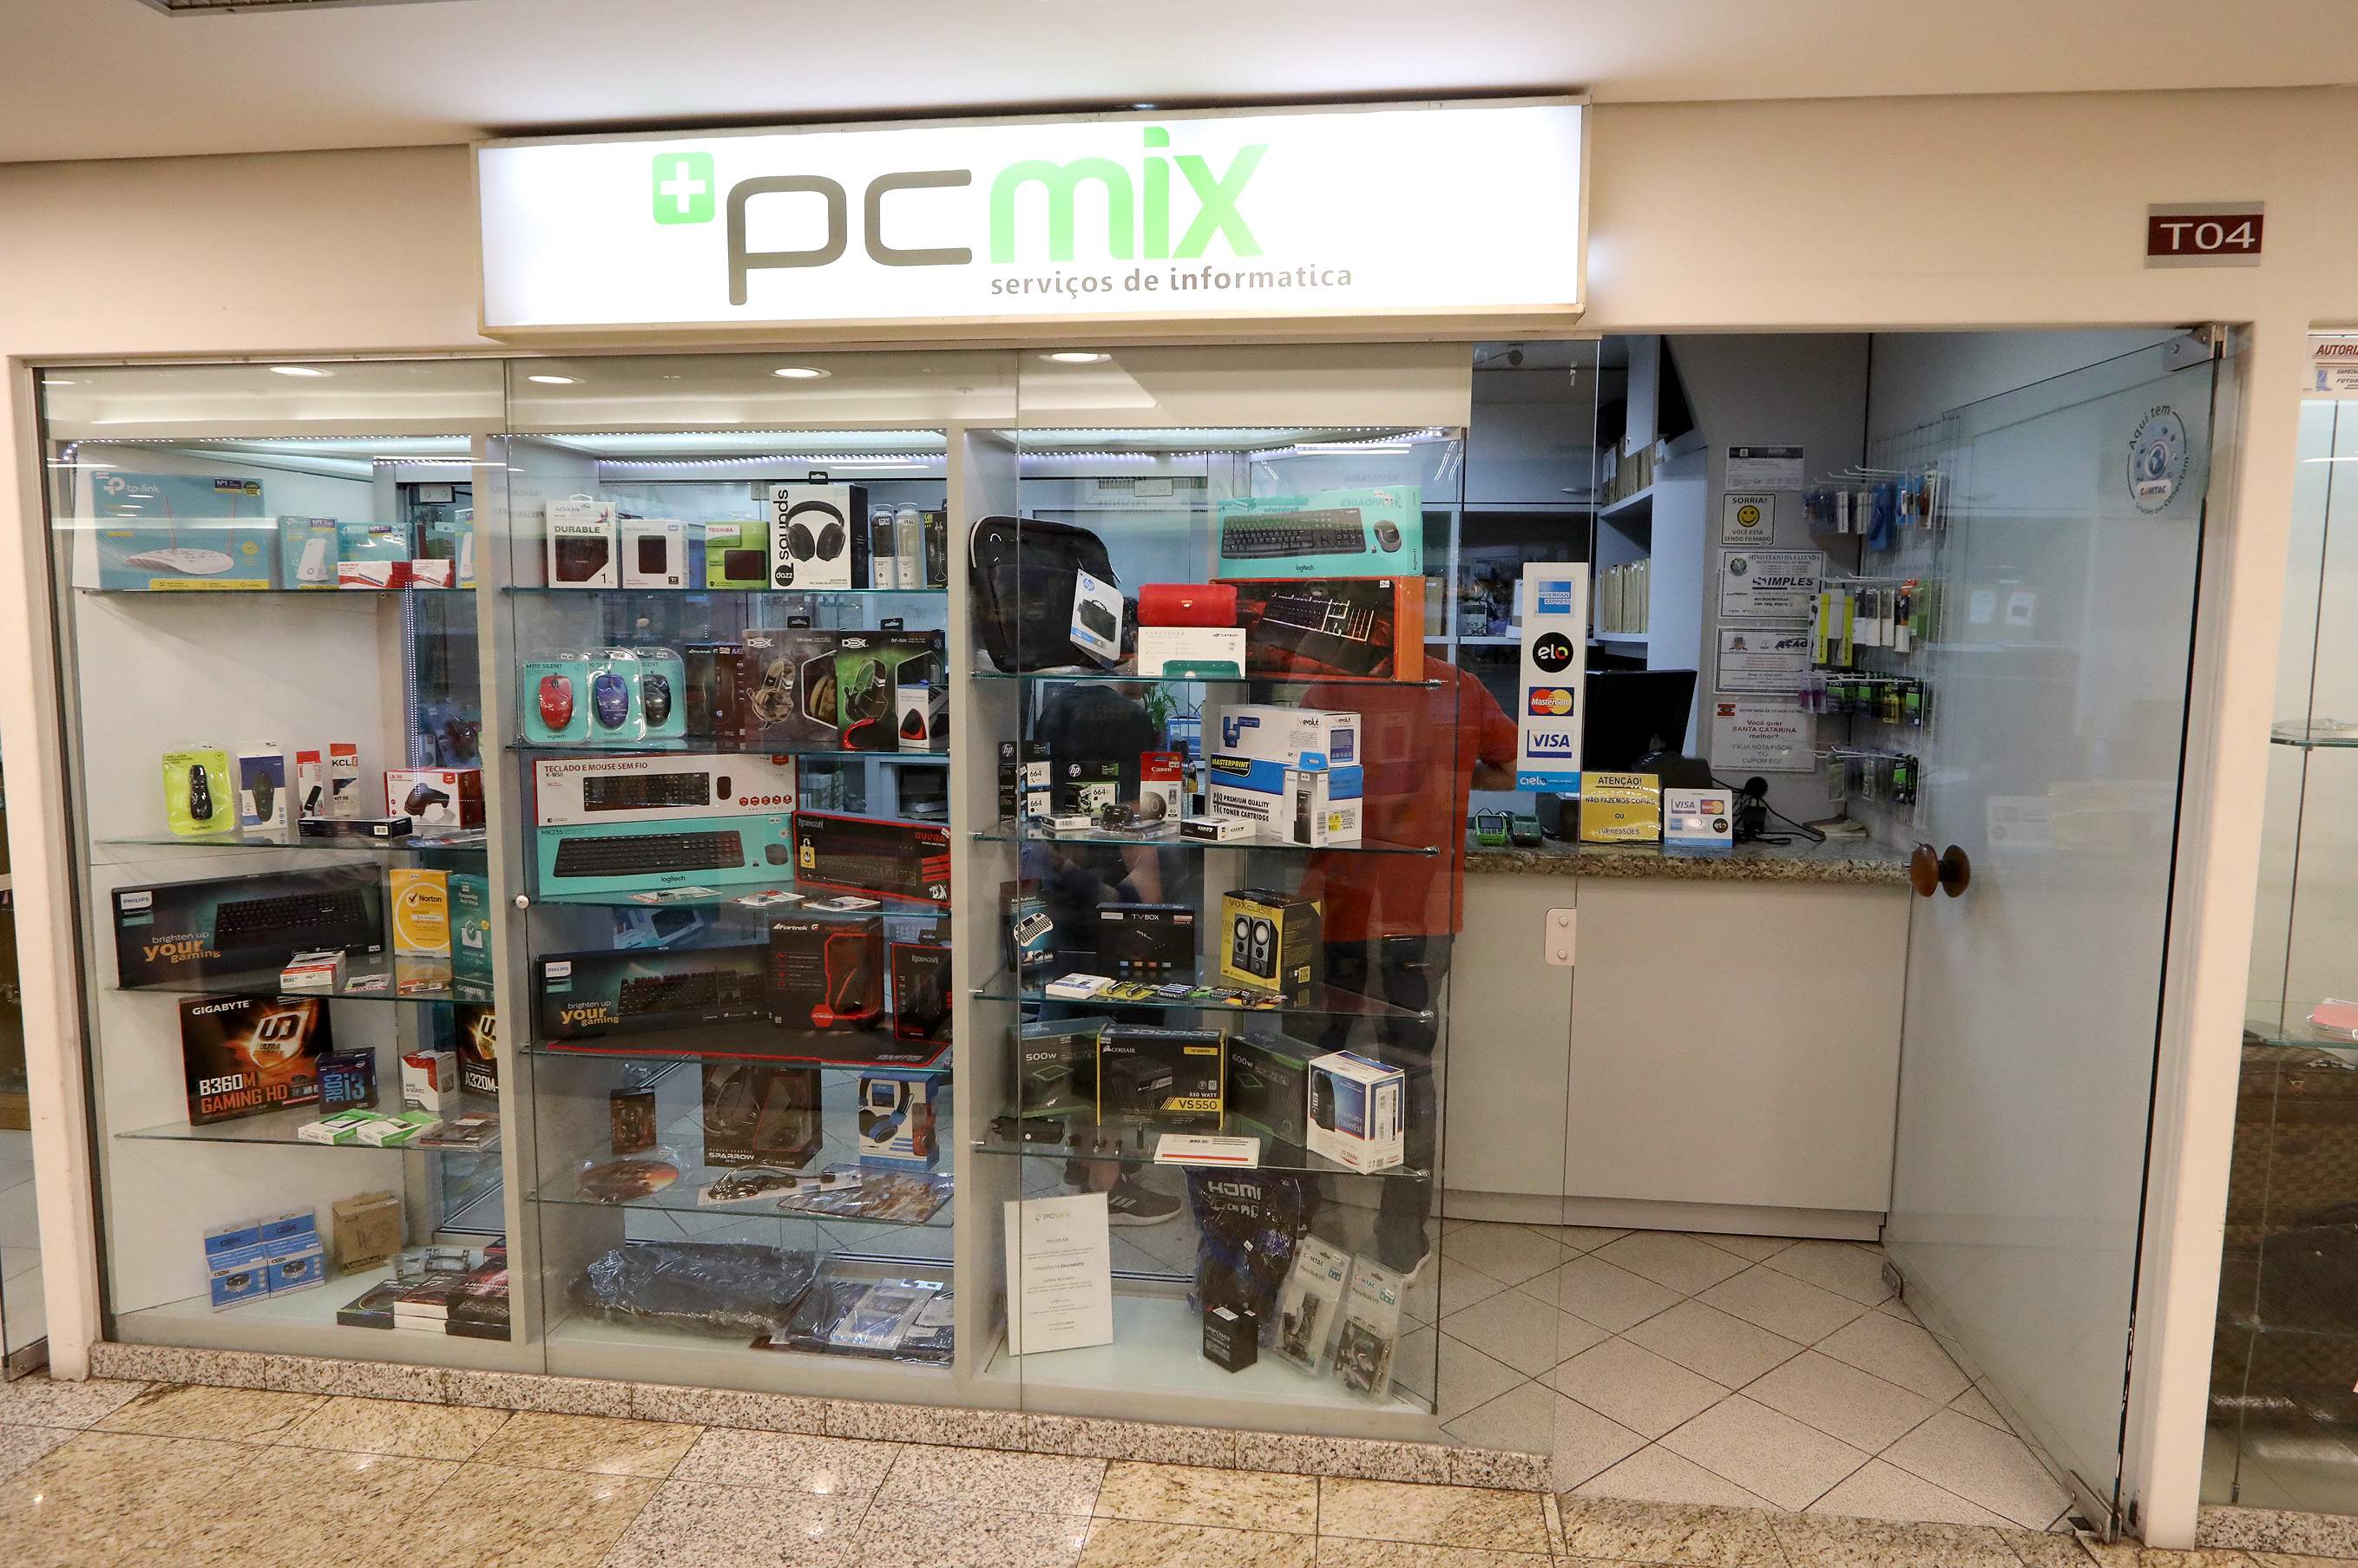 PCMIX - Produtos e Serviços de Informática